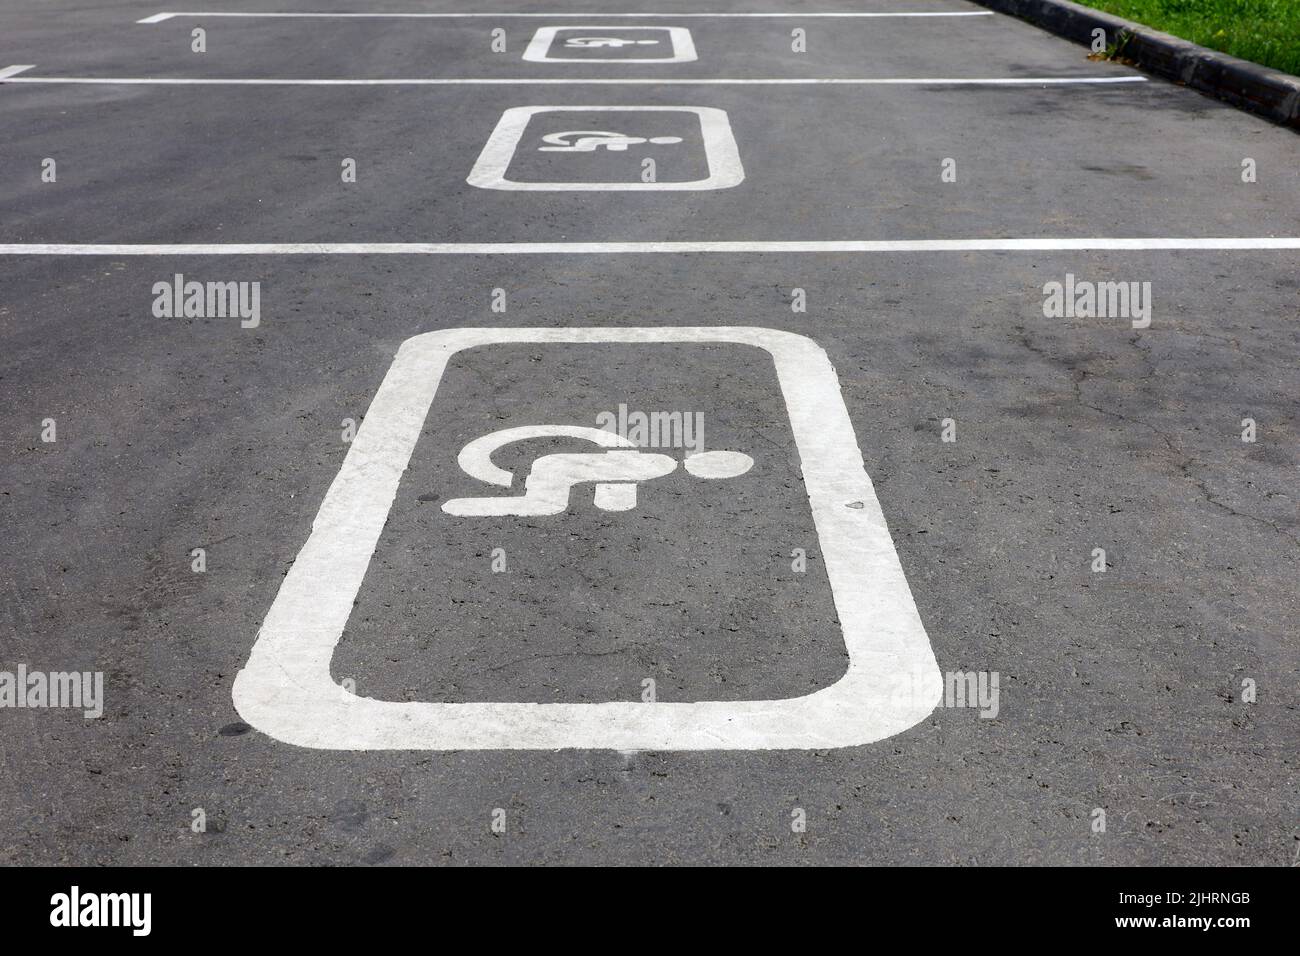 Panneaux de signalisation pour les parkings handicapés dans la rue. Place de parking pour handicapés, signe de fauteuil roulant peint sur l'asphalte Banque D'Images